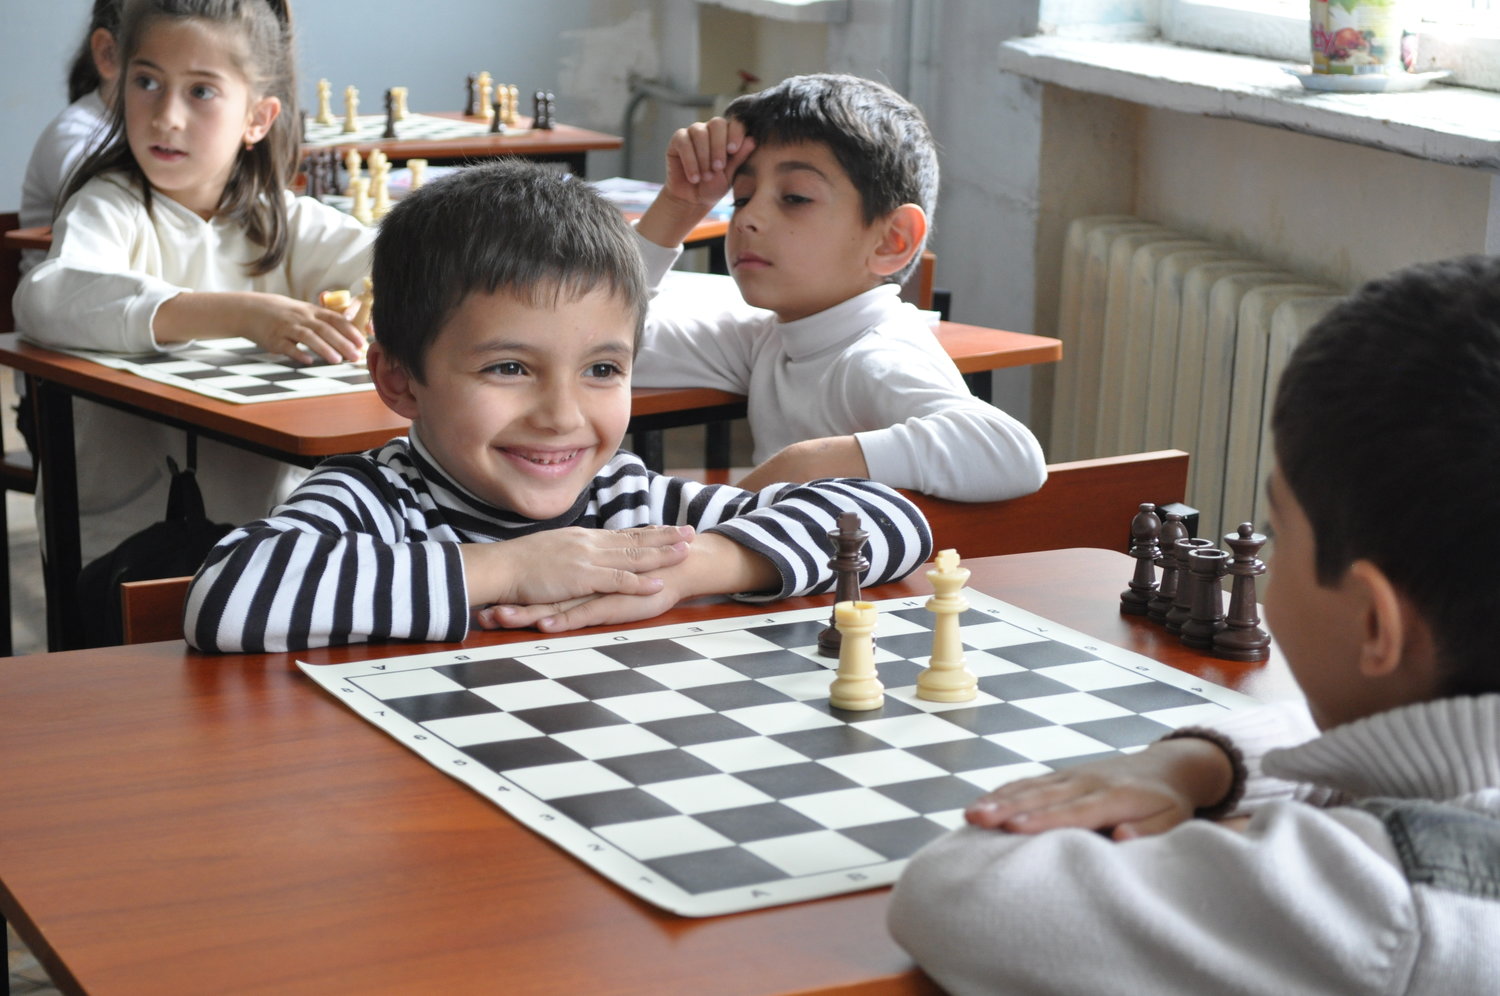 Игра армян. Шахматы и дети в Армении. Шахматы для детей. Шахматы в школе. Шахматы в Армении школьный предмет.